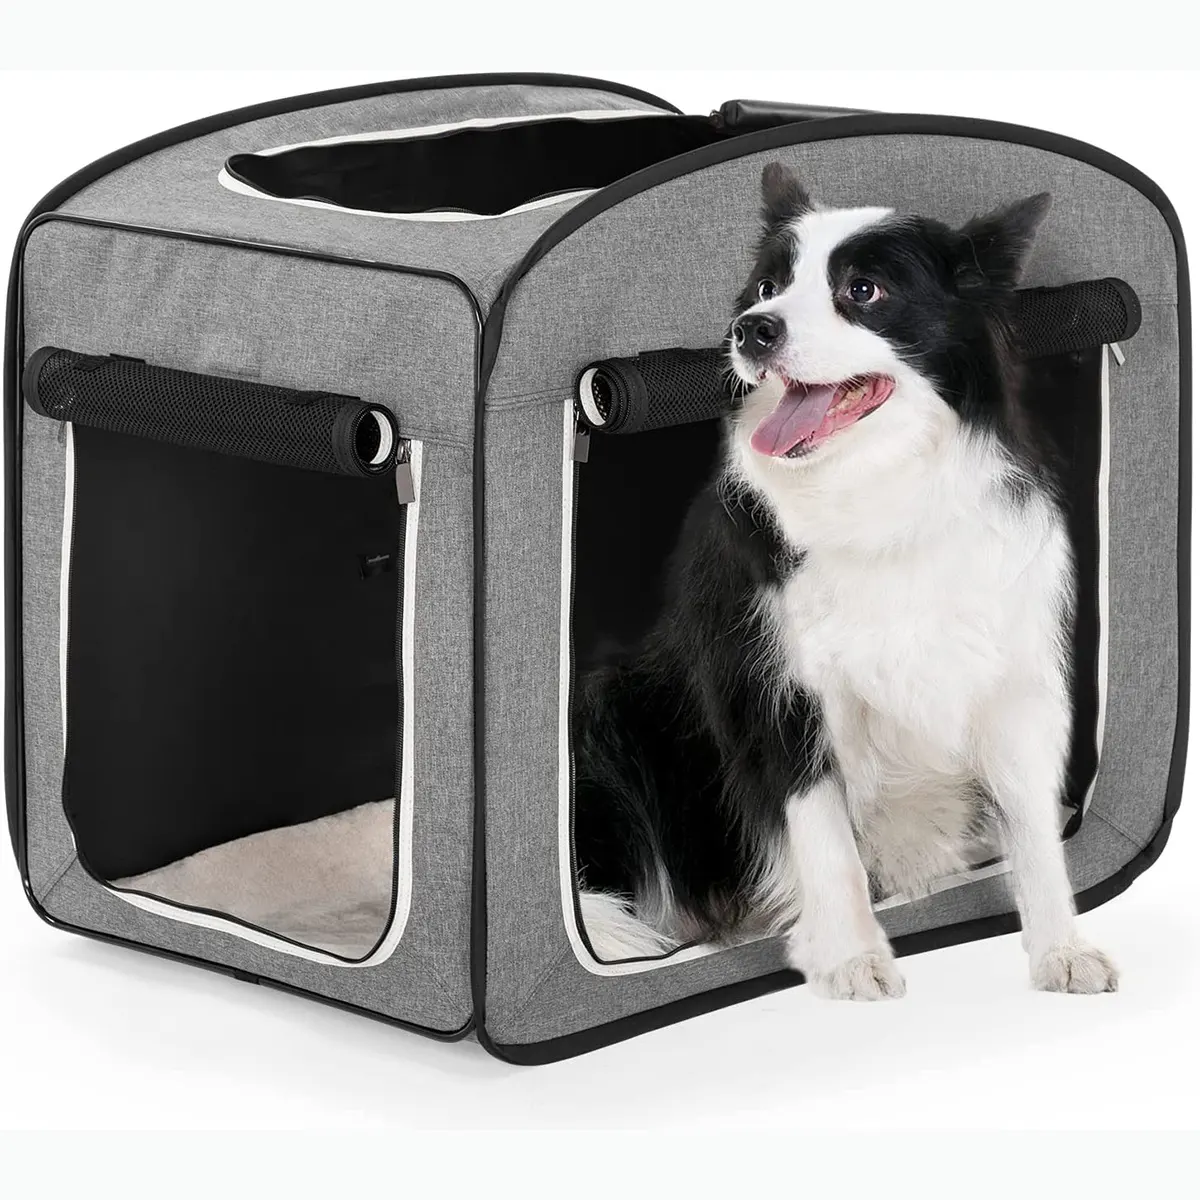 Une caisse de voyage pliable pour chien un peu chère mais vraiment de qualité supérieure, caisse portable pour chien Pop Up